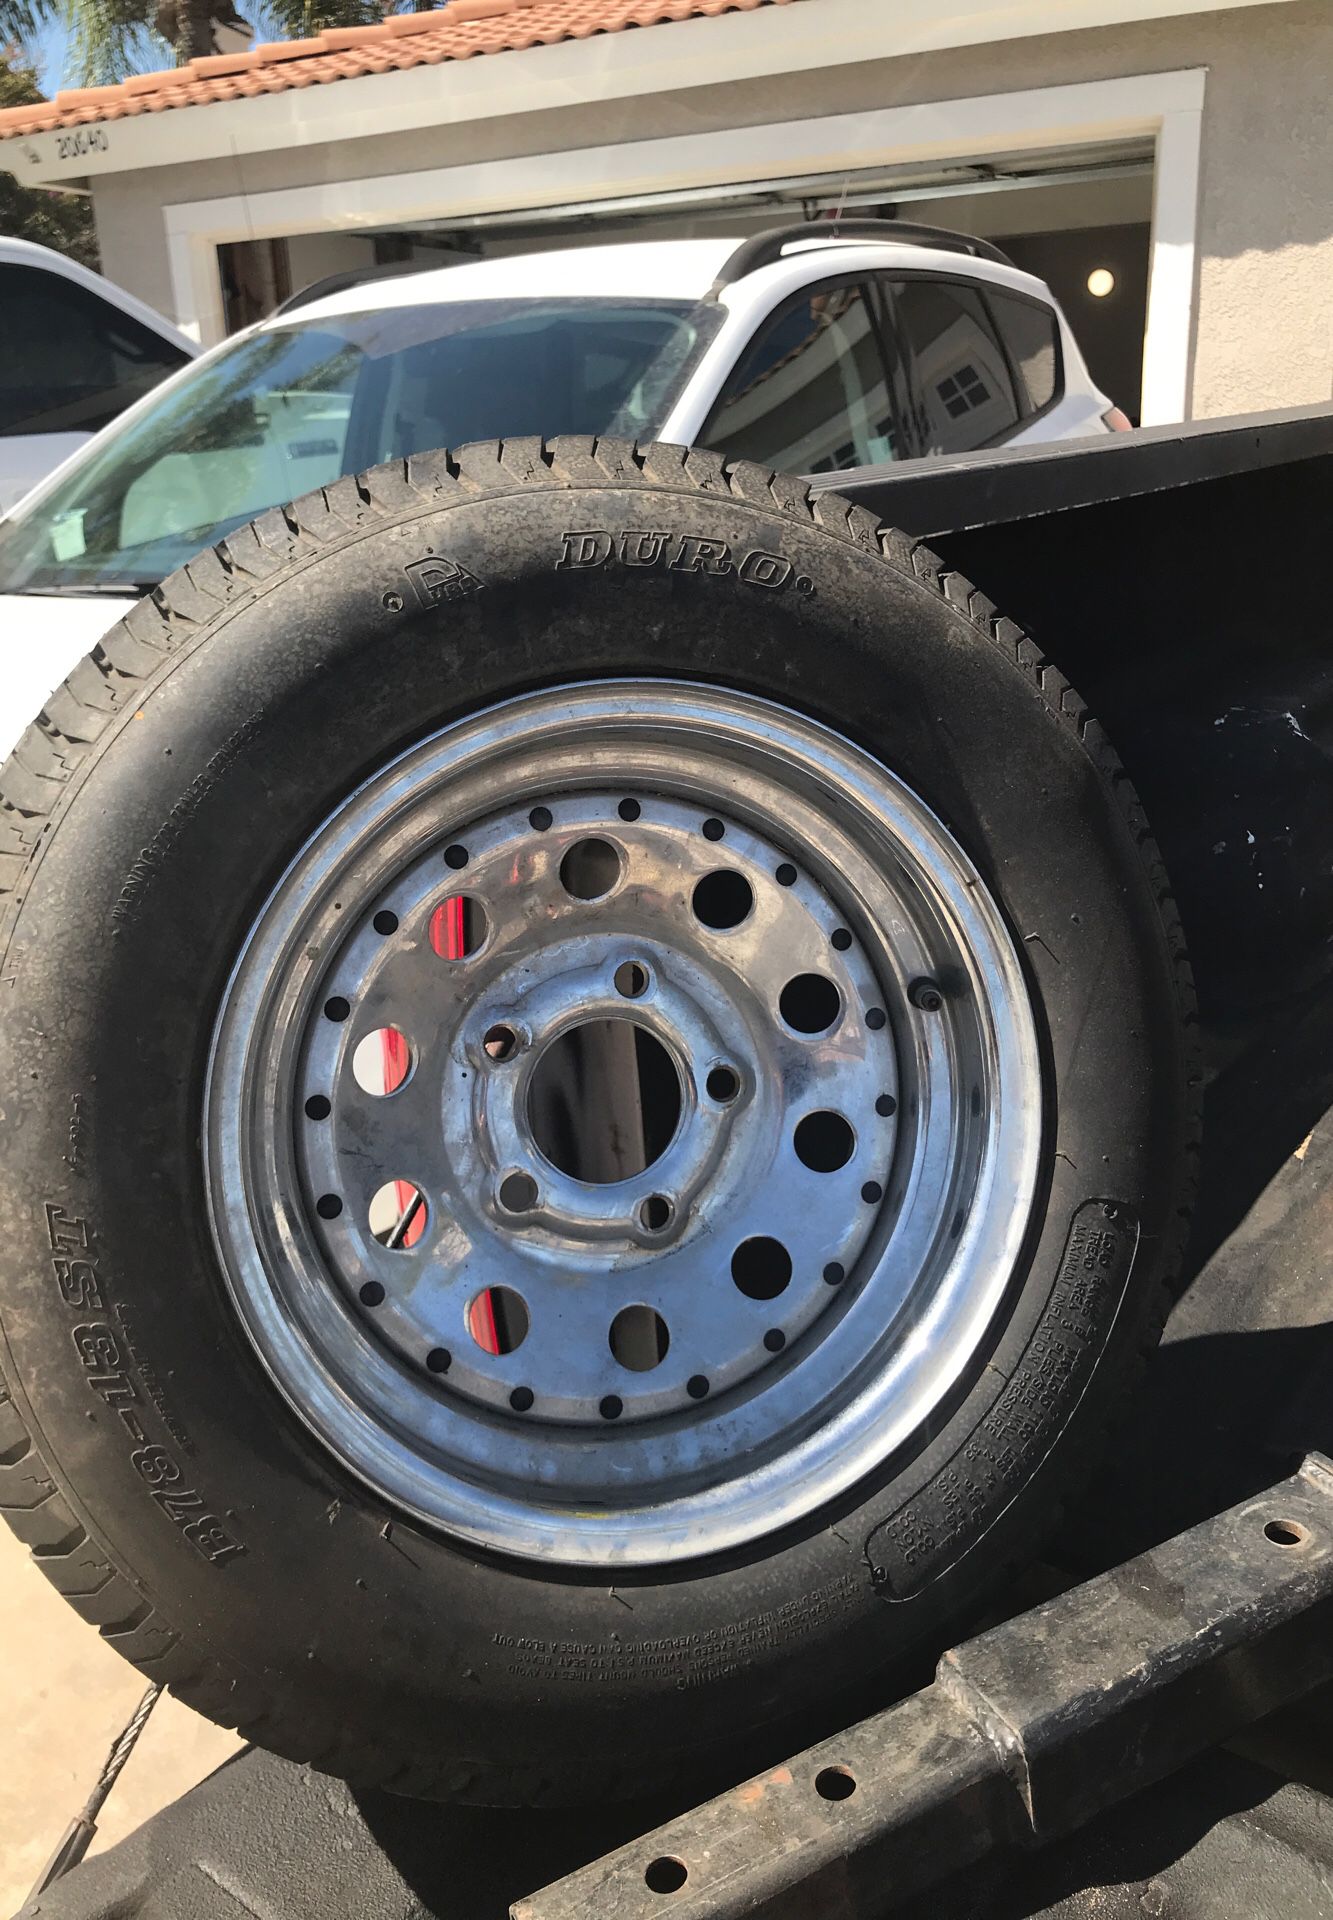 Trailer Tire with Chrome Rim!